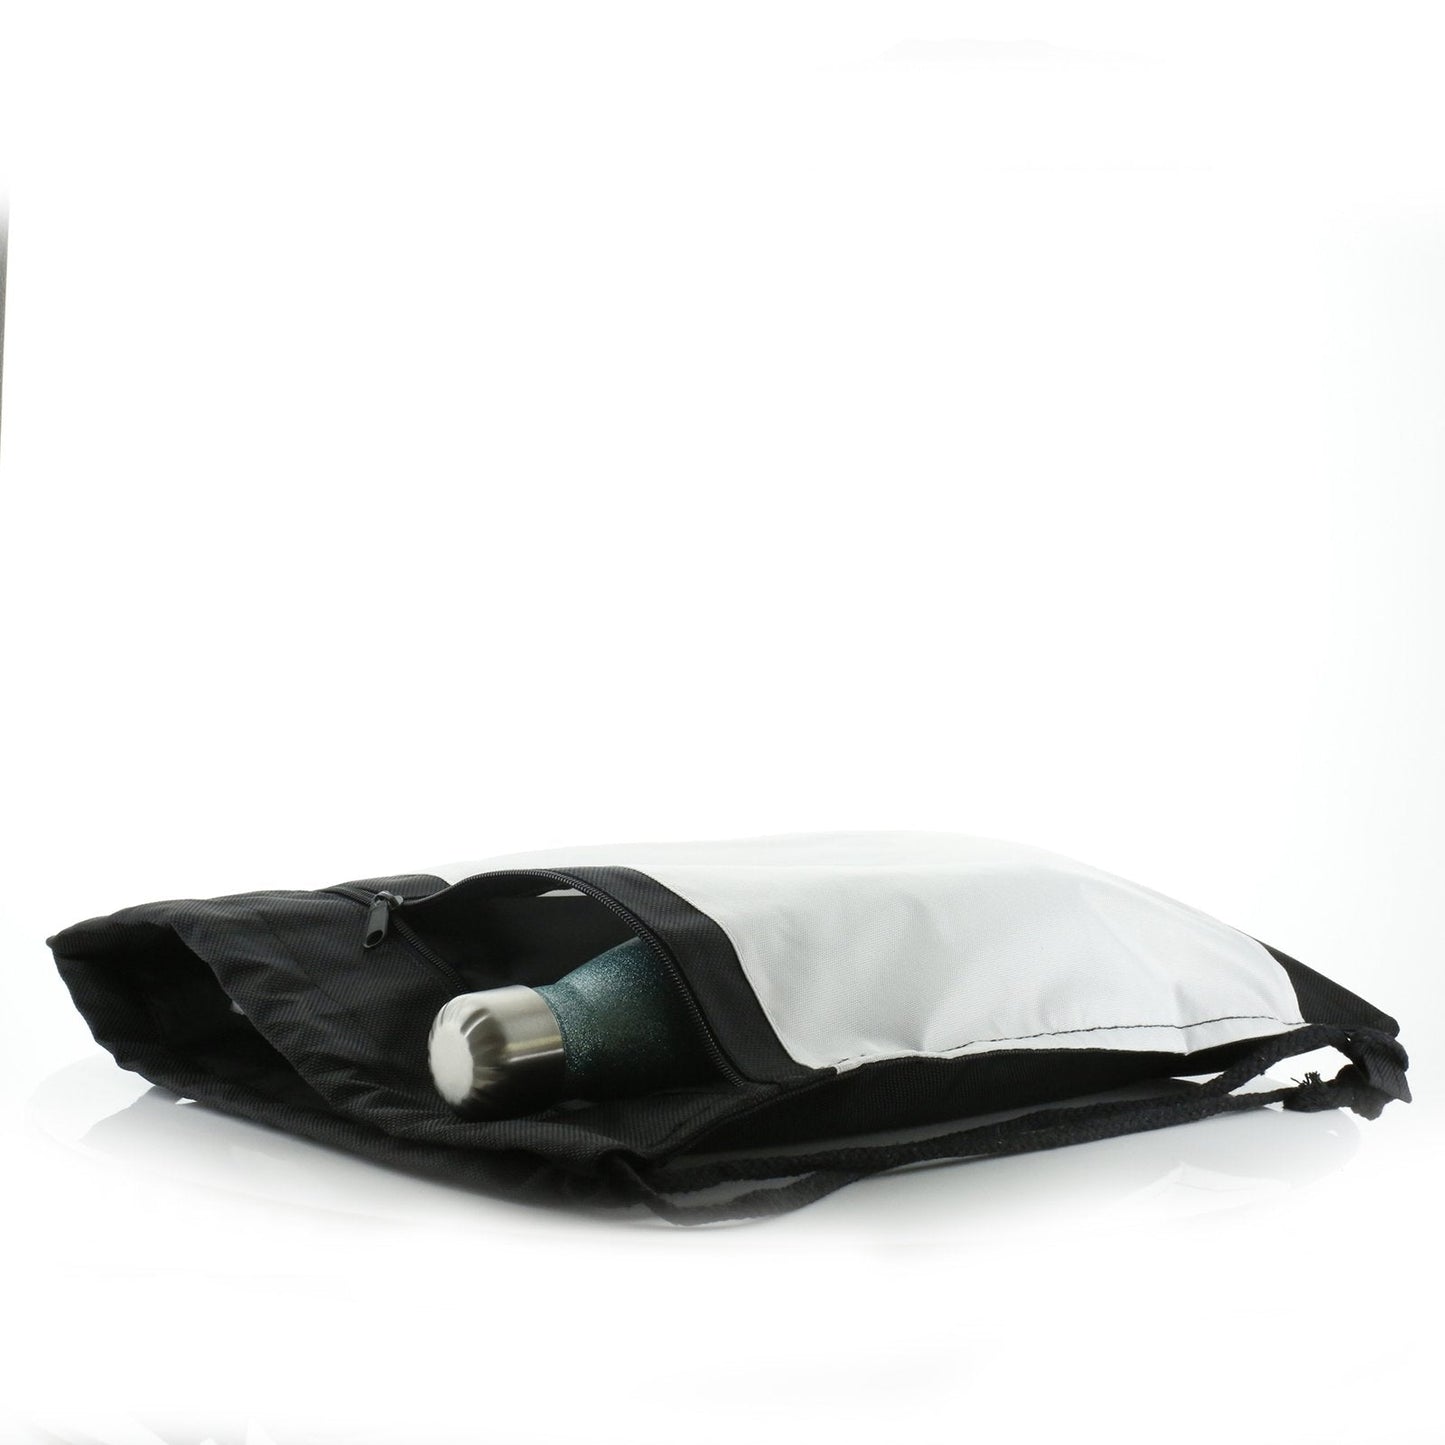 Personalisierter schwarzer Kordelzug-Rucksack mit Begrüßungstext und umarmenden Mama- und Baby-Pandas